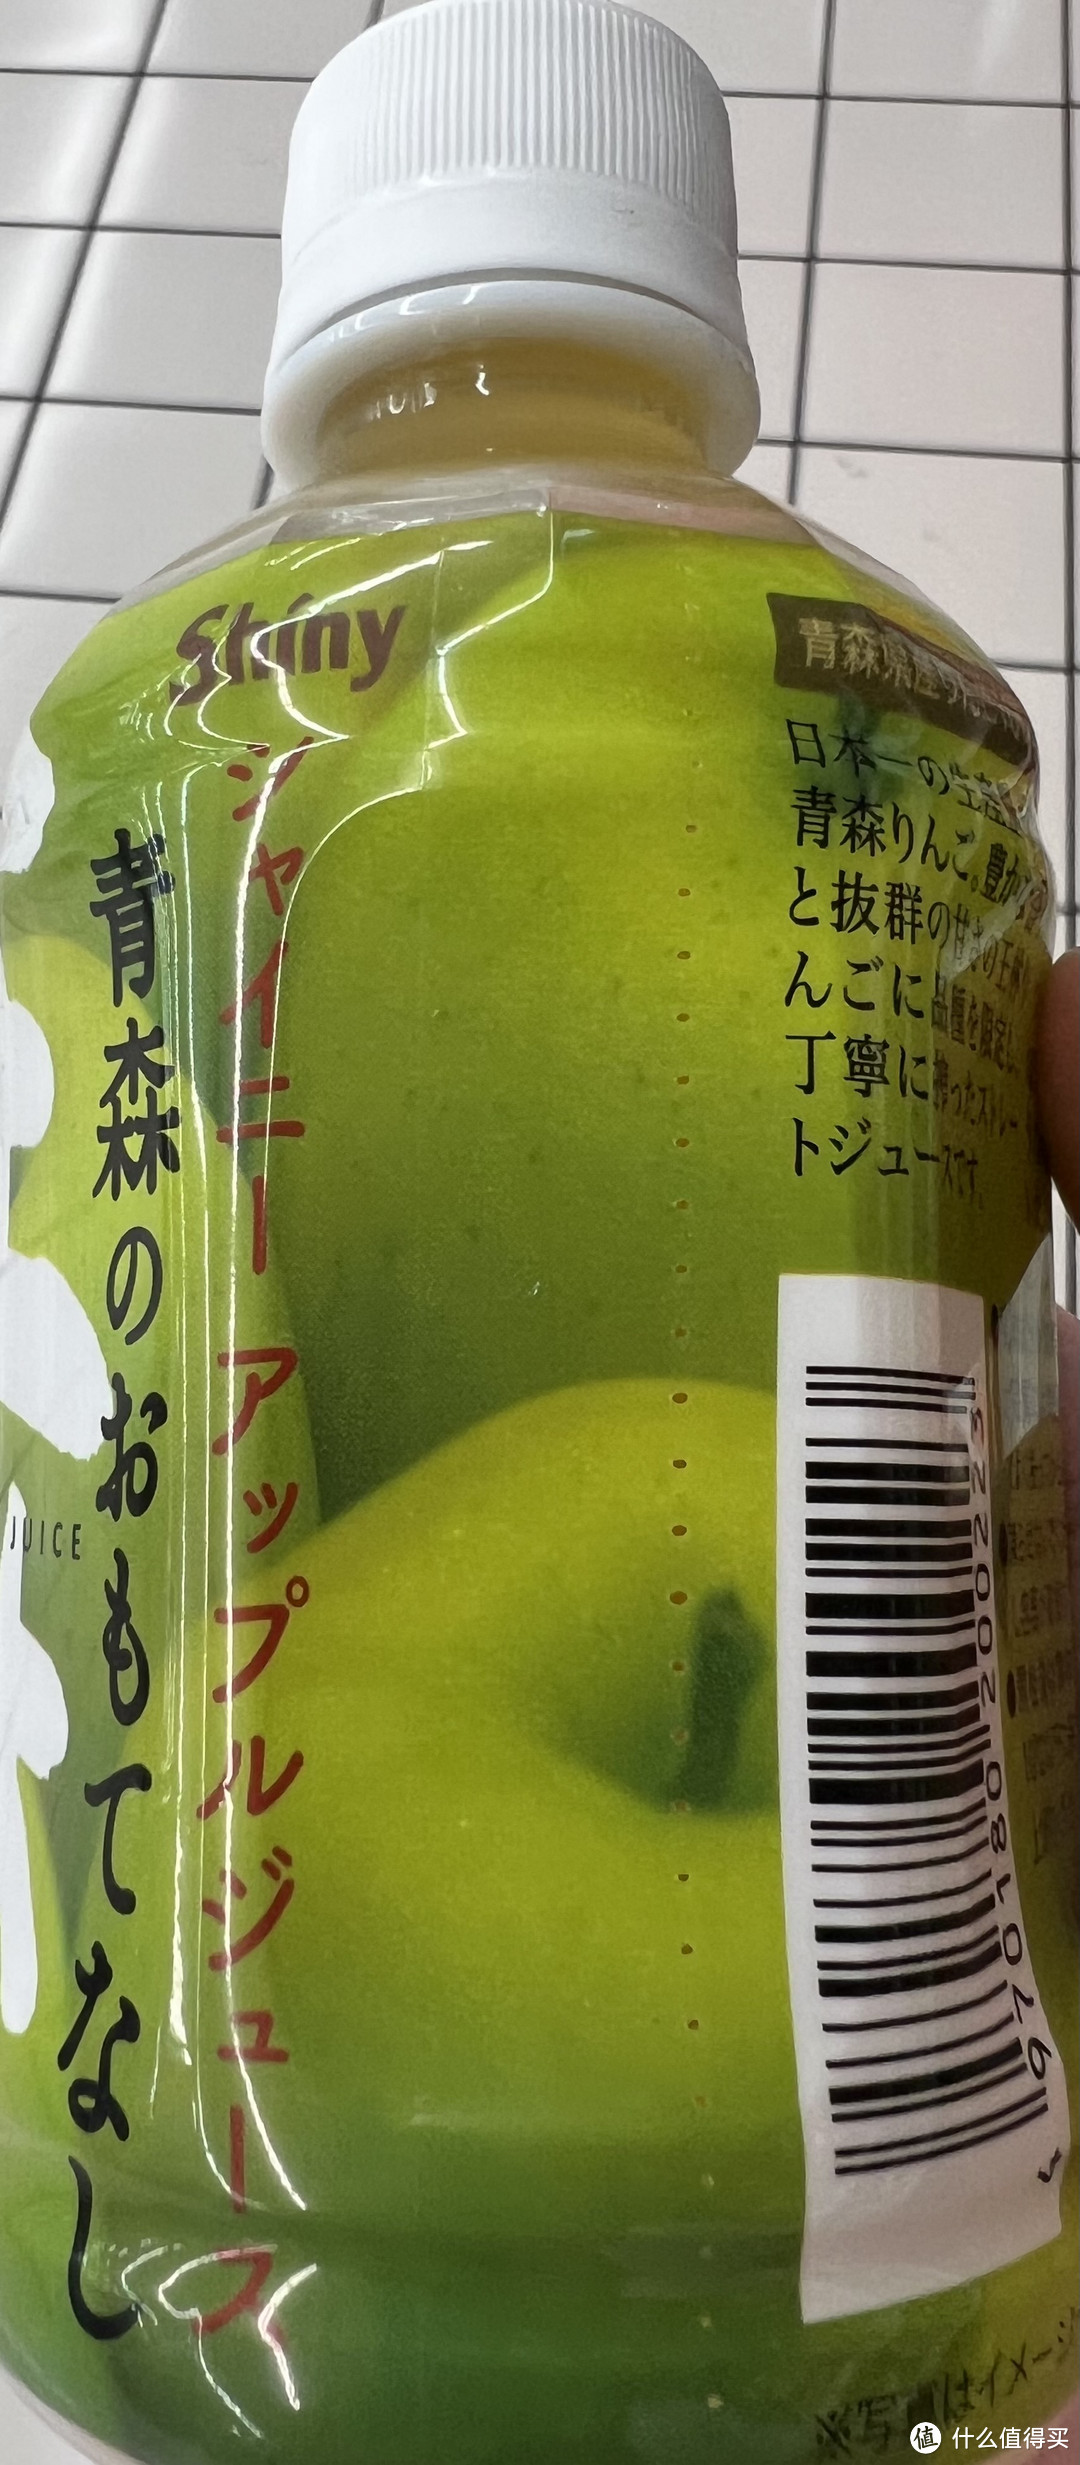 我估计大部分都不知道的一款苹果汁饮料——青森王林苹果汁饮料！